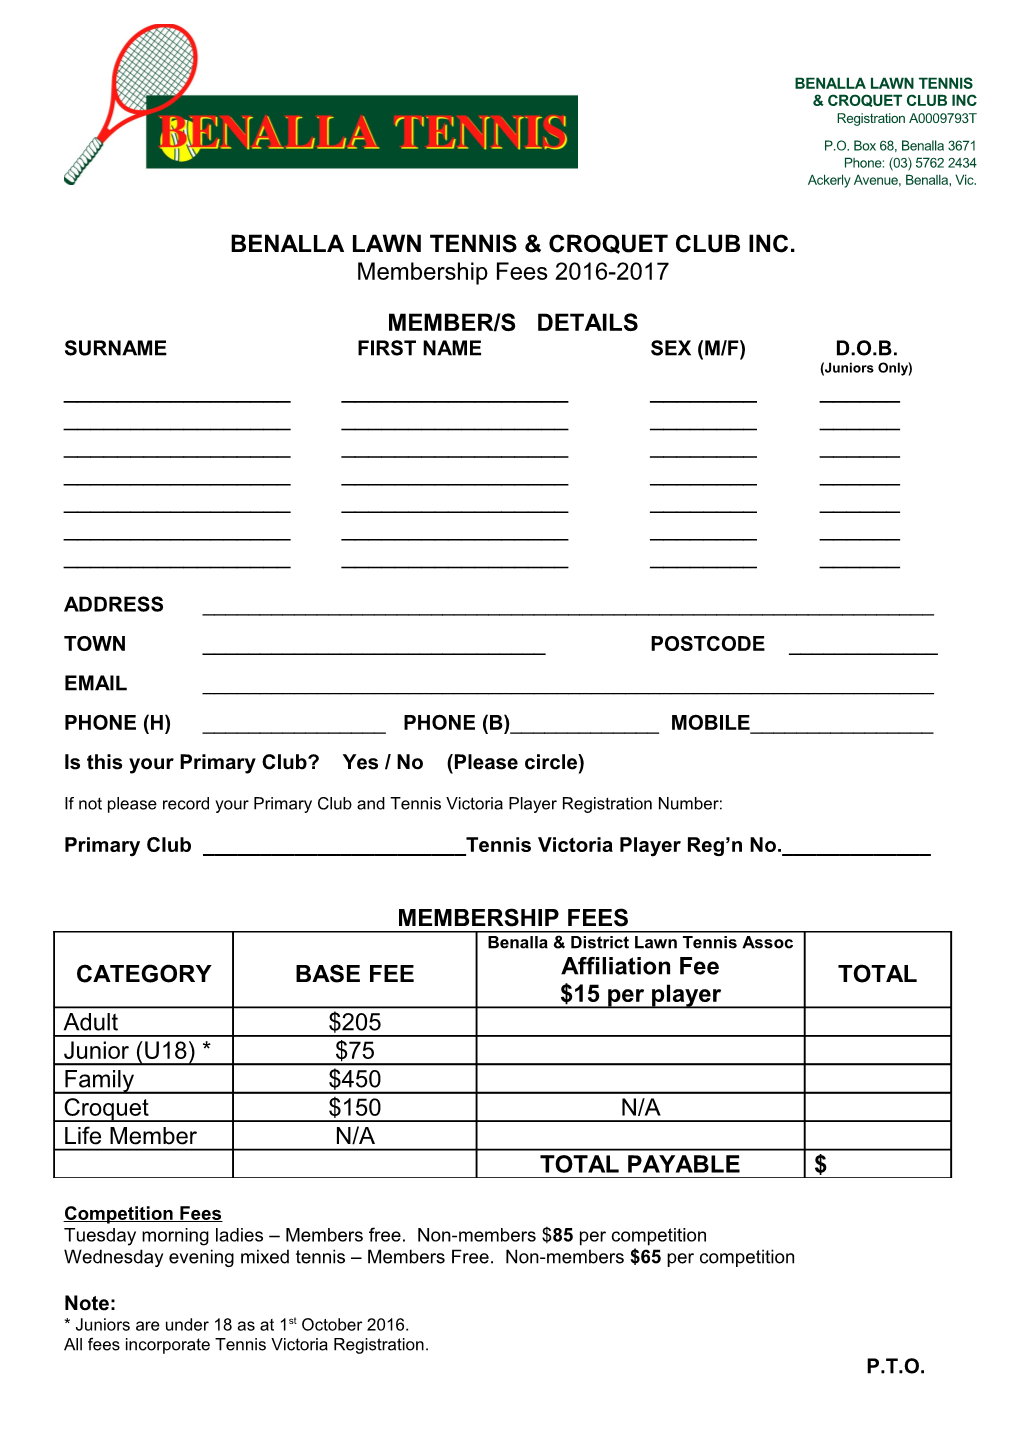 Benalla Lawn Tennis & Croquet Club Inc